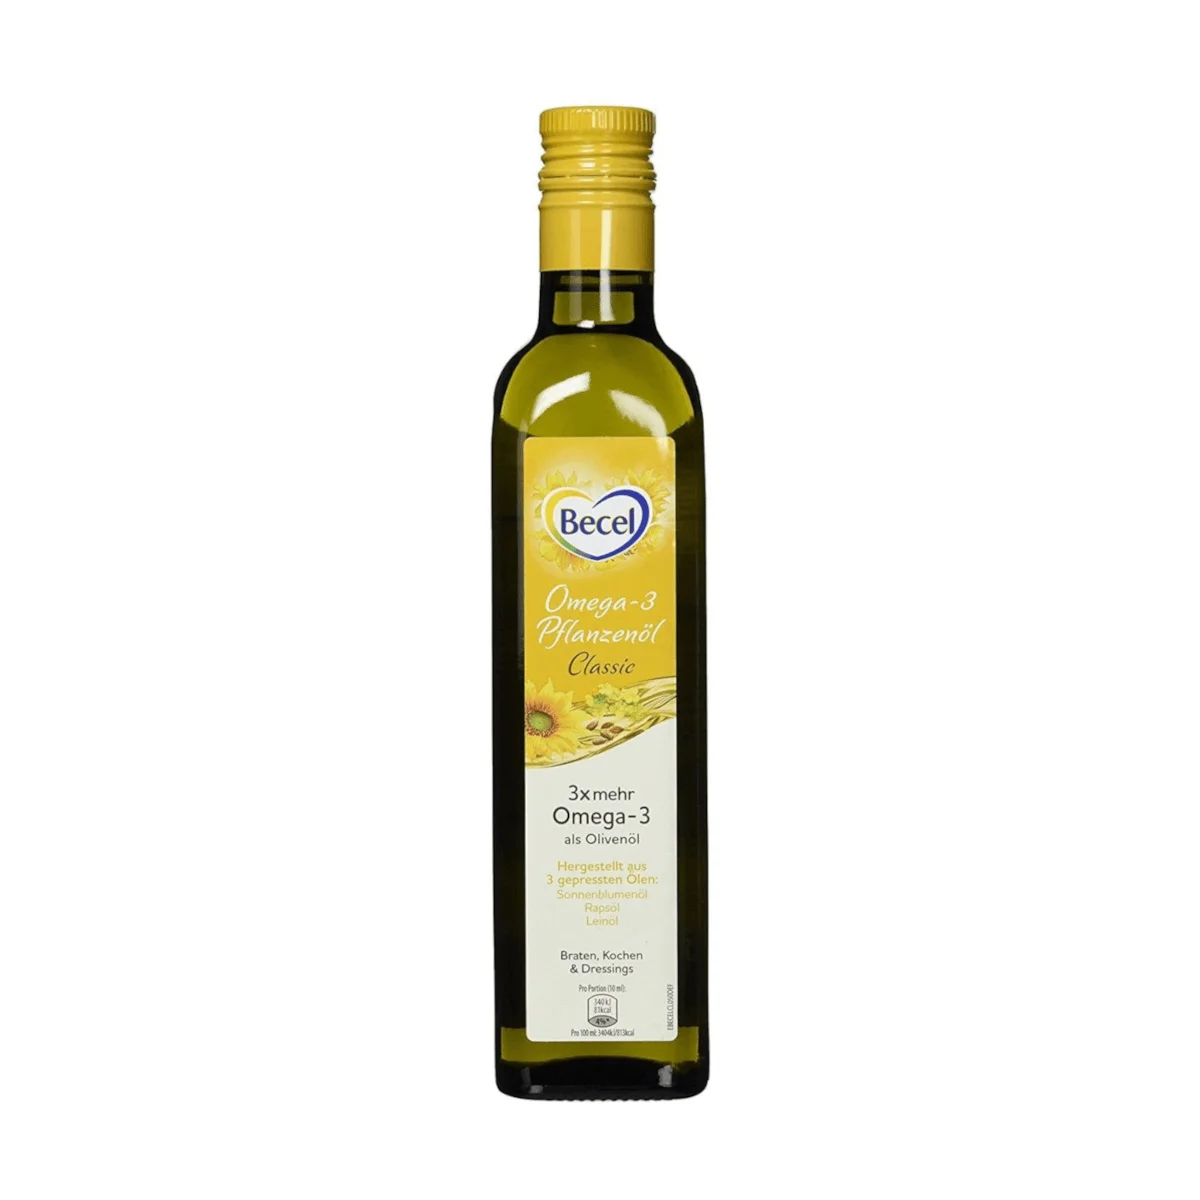 Becel Omega-3 Pflanzenöl, Classic 500 ml